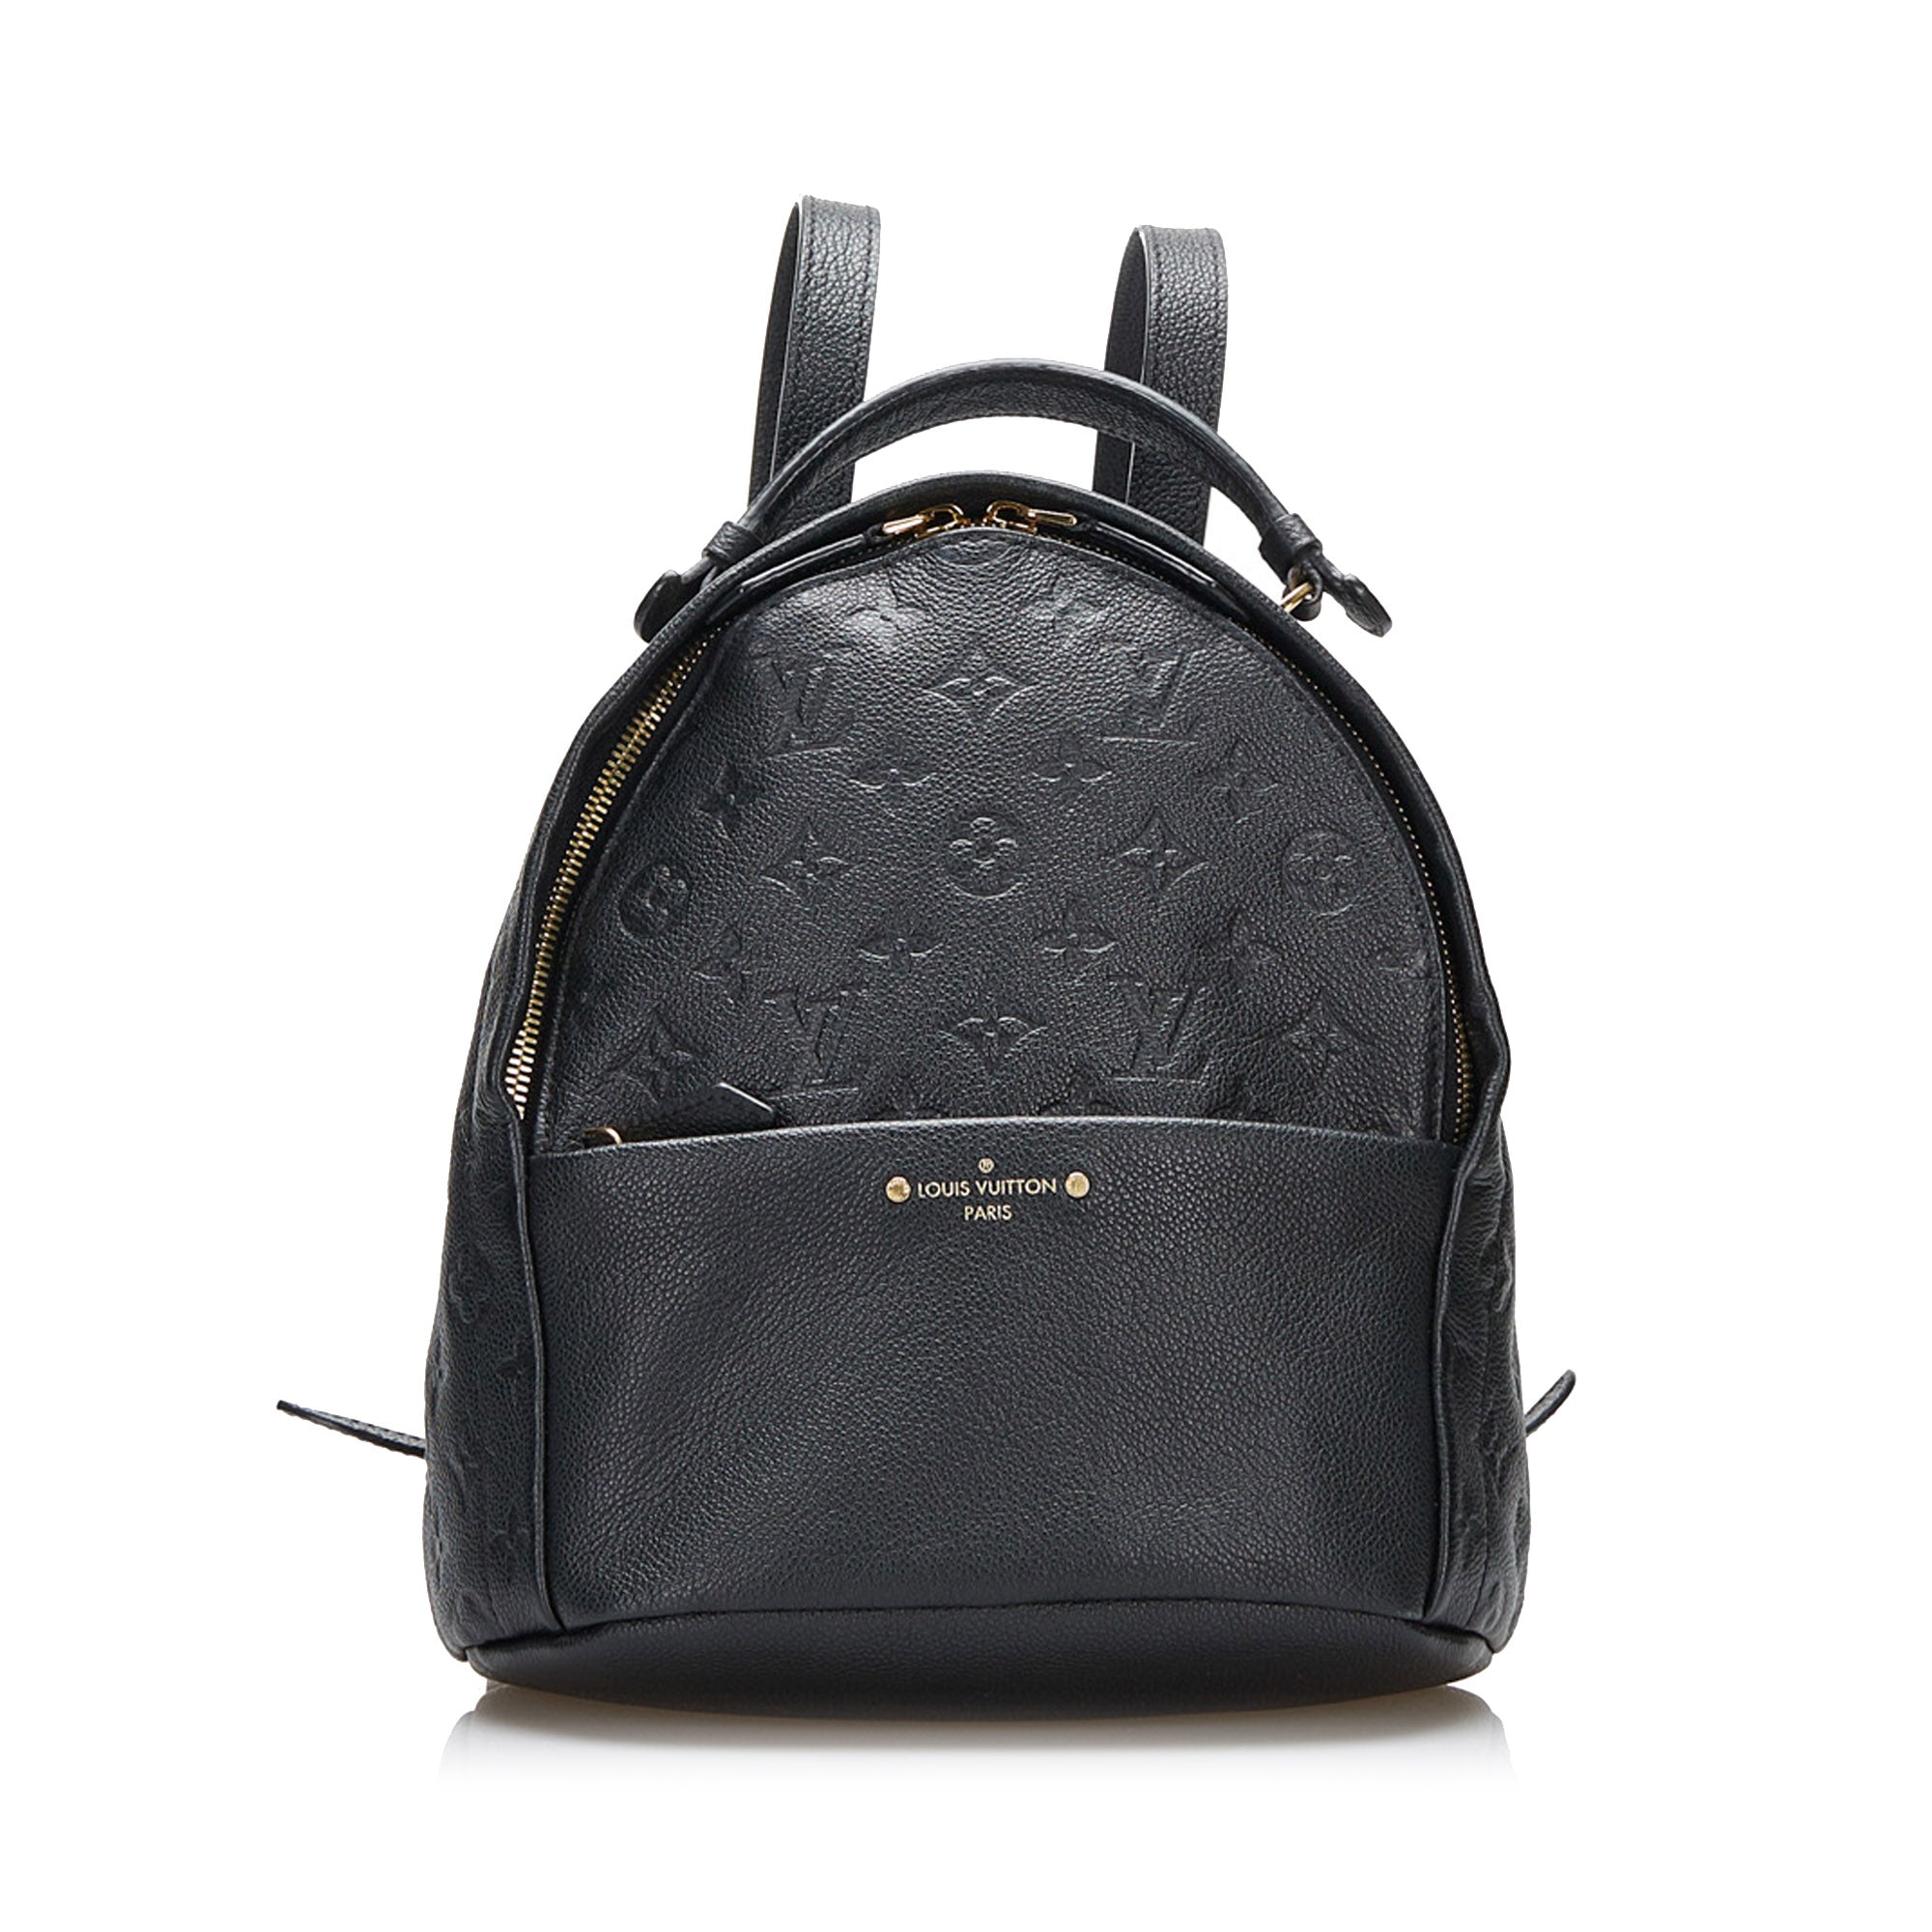 Vintage Louis Vuitton Black Epi Leather Sorbonne Briefcase Bag